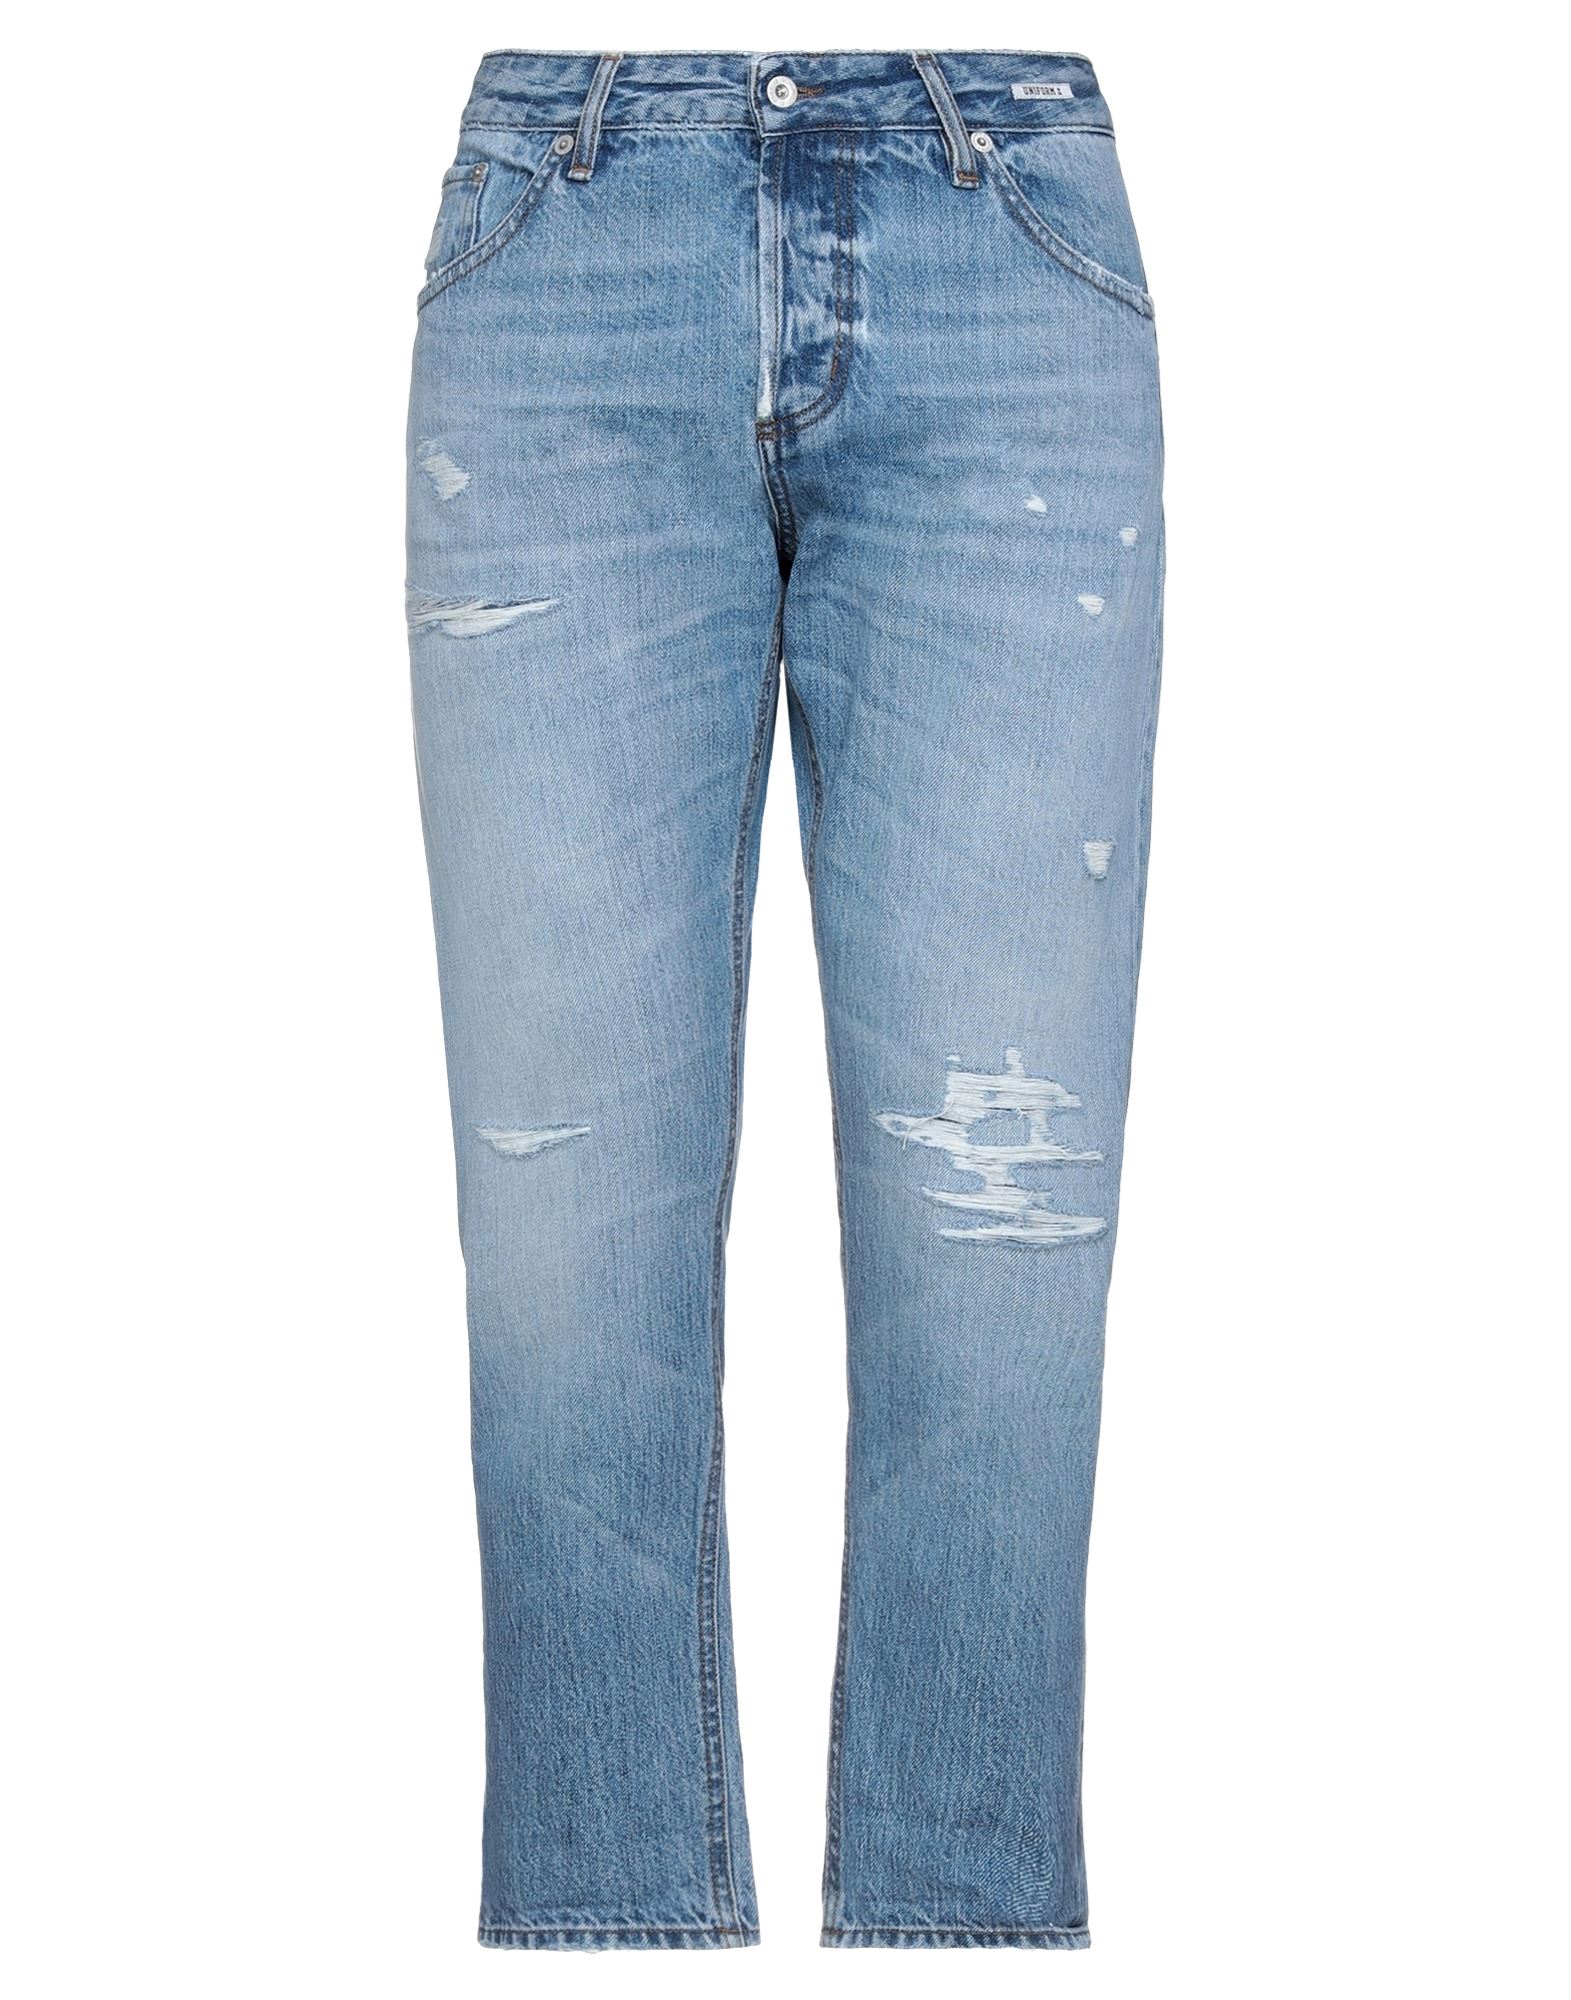 UNIFORM Jeans | Smart Closet